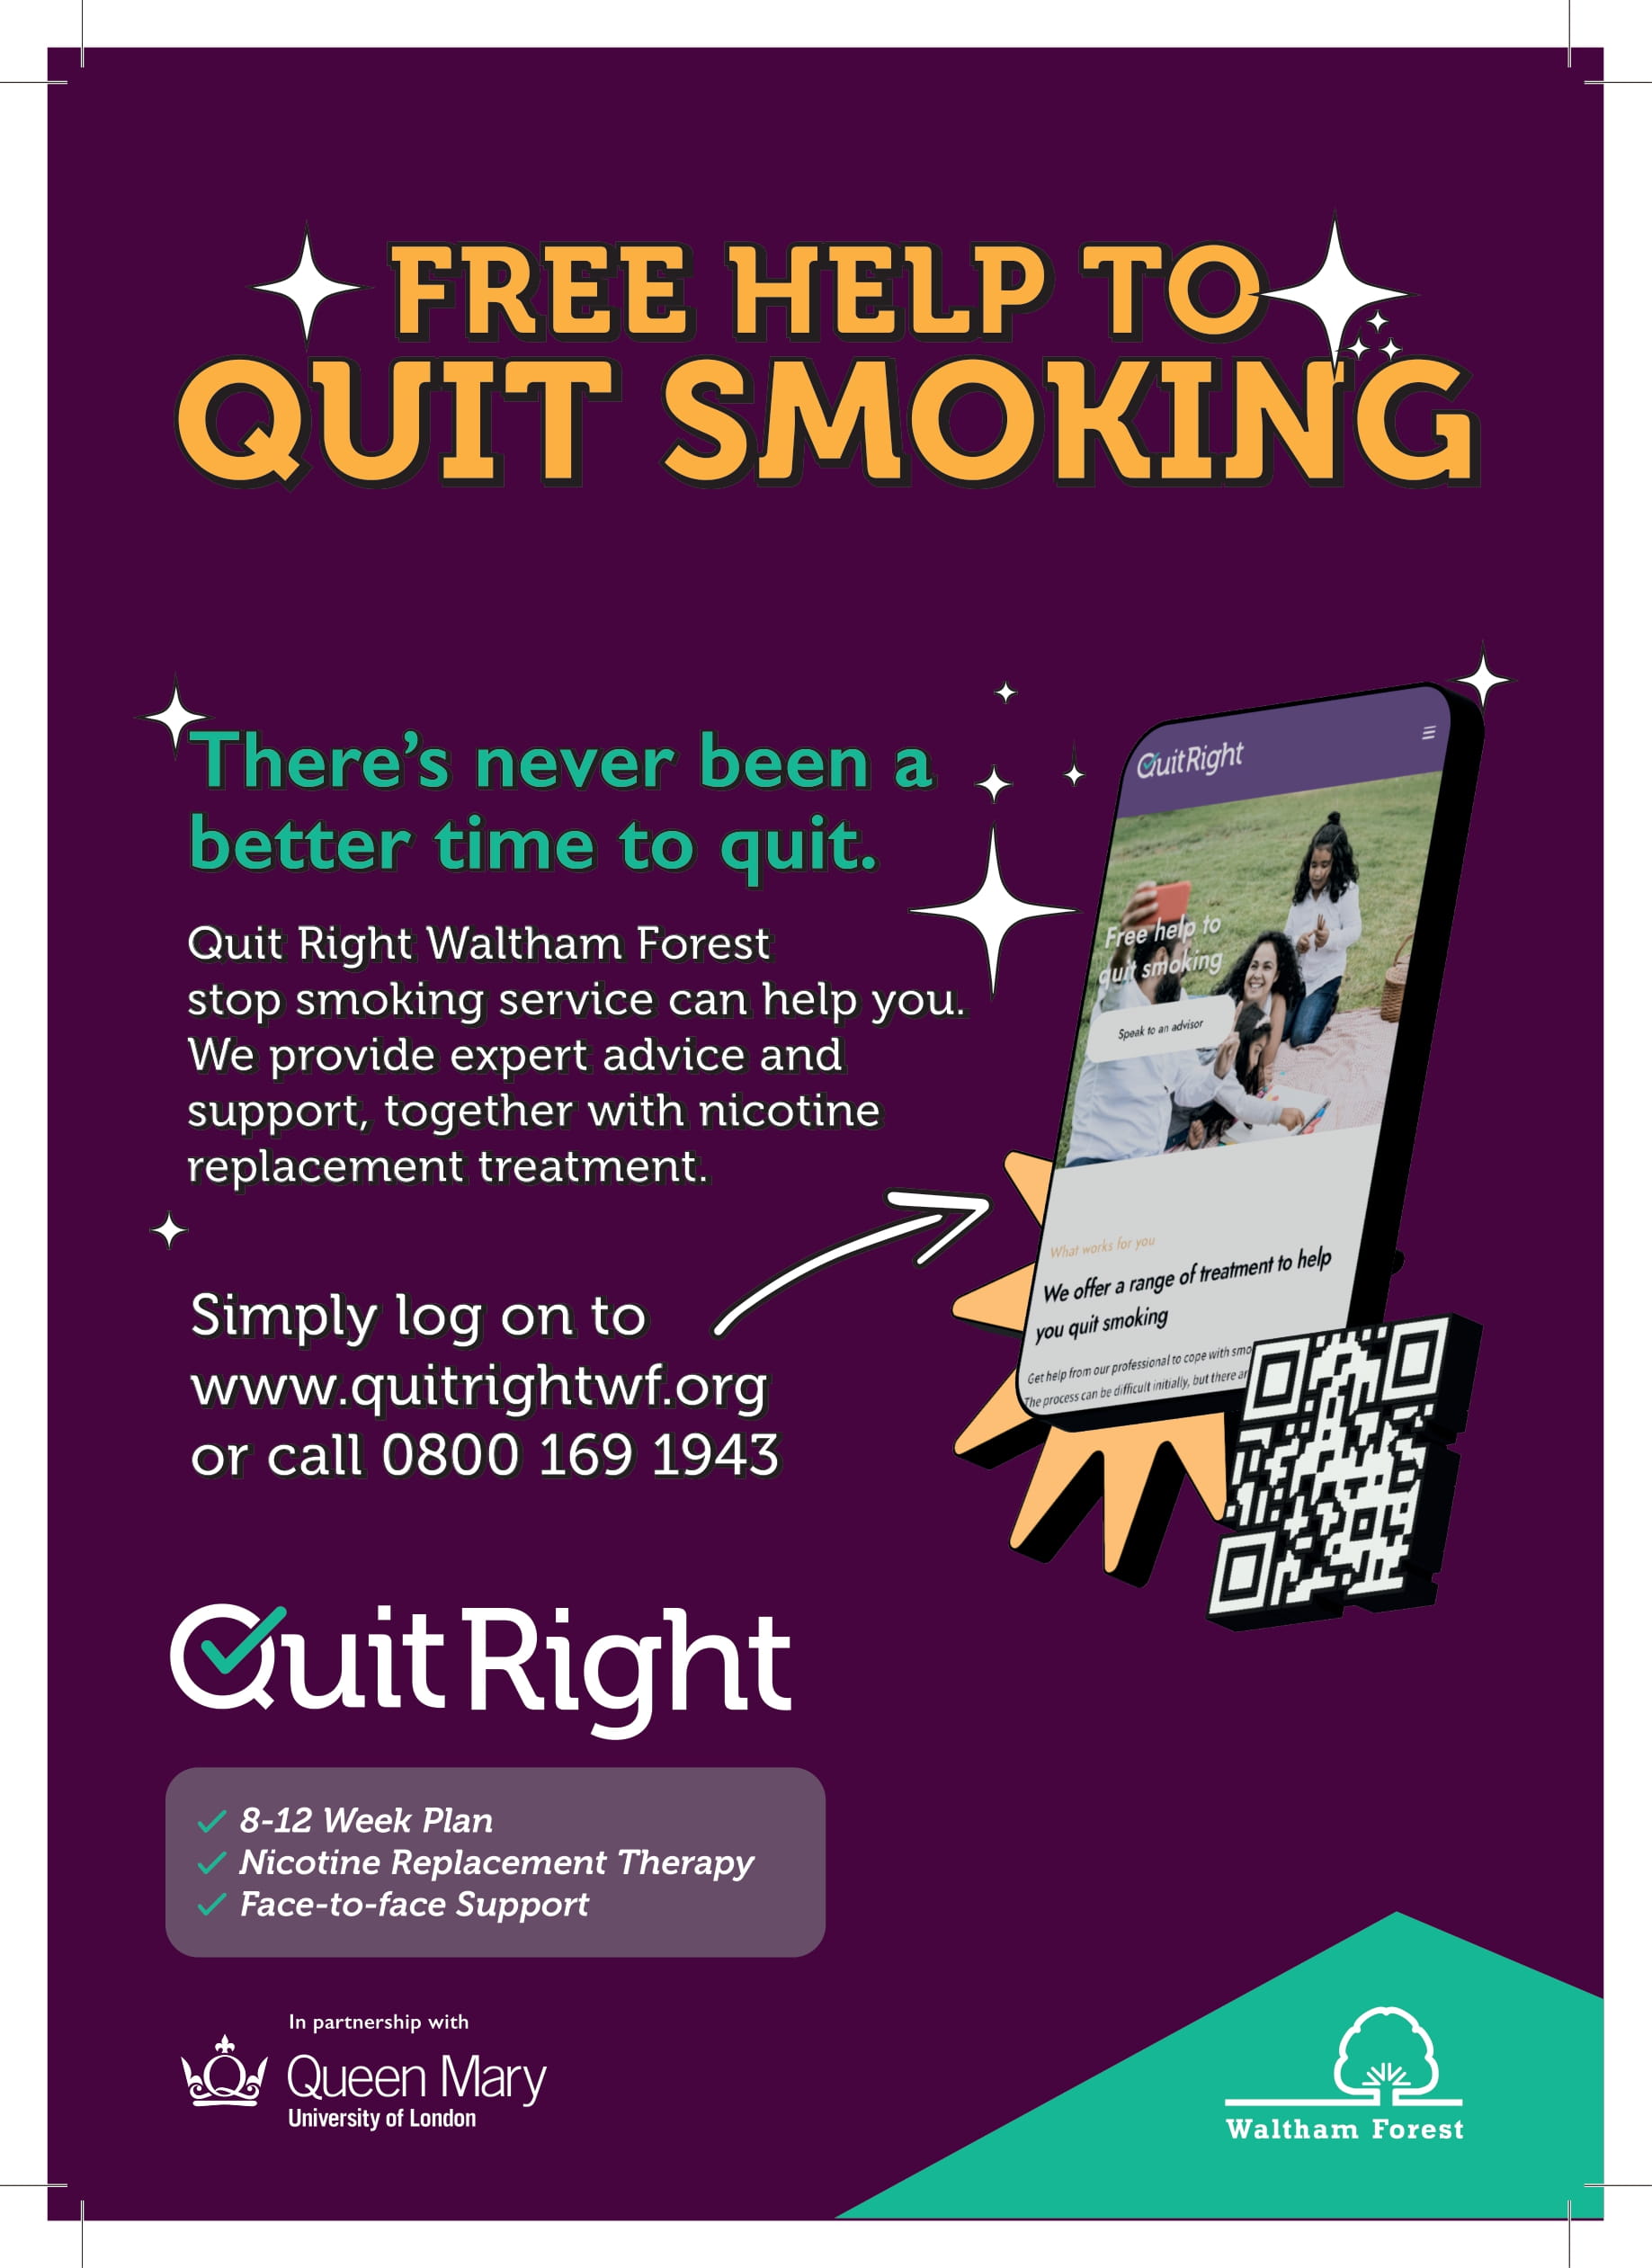 Free help to quit smoking